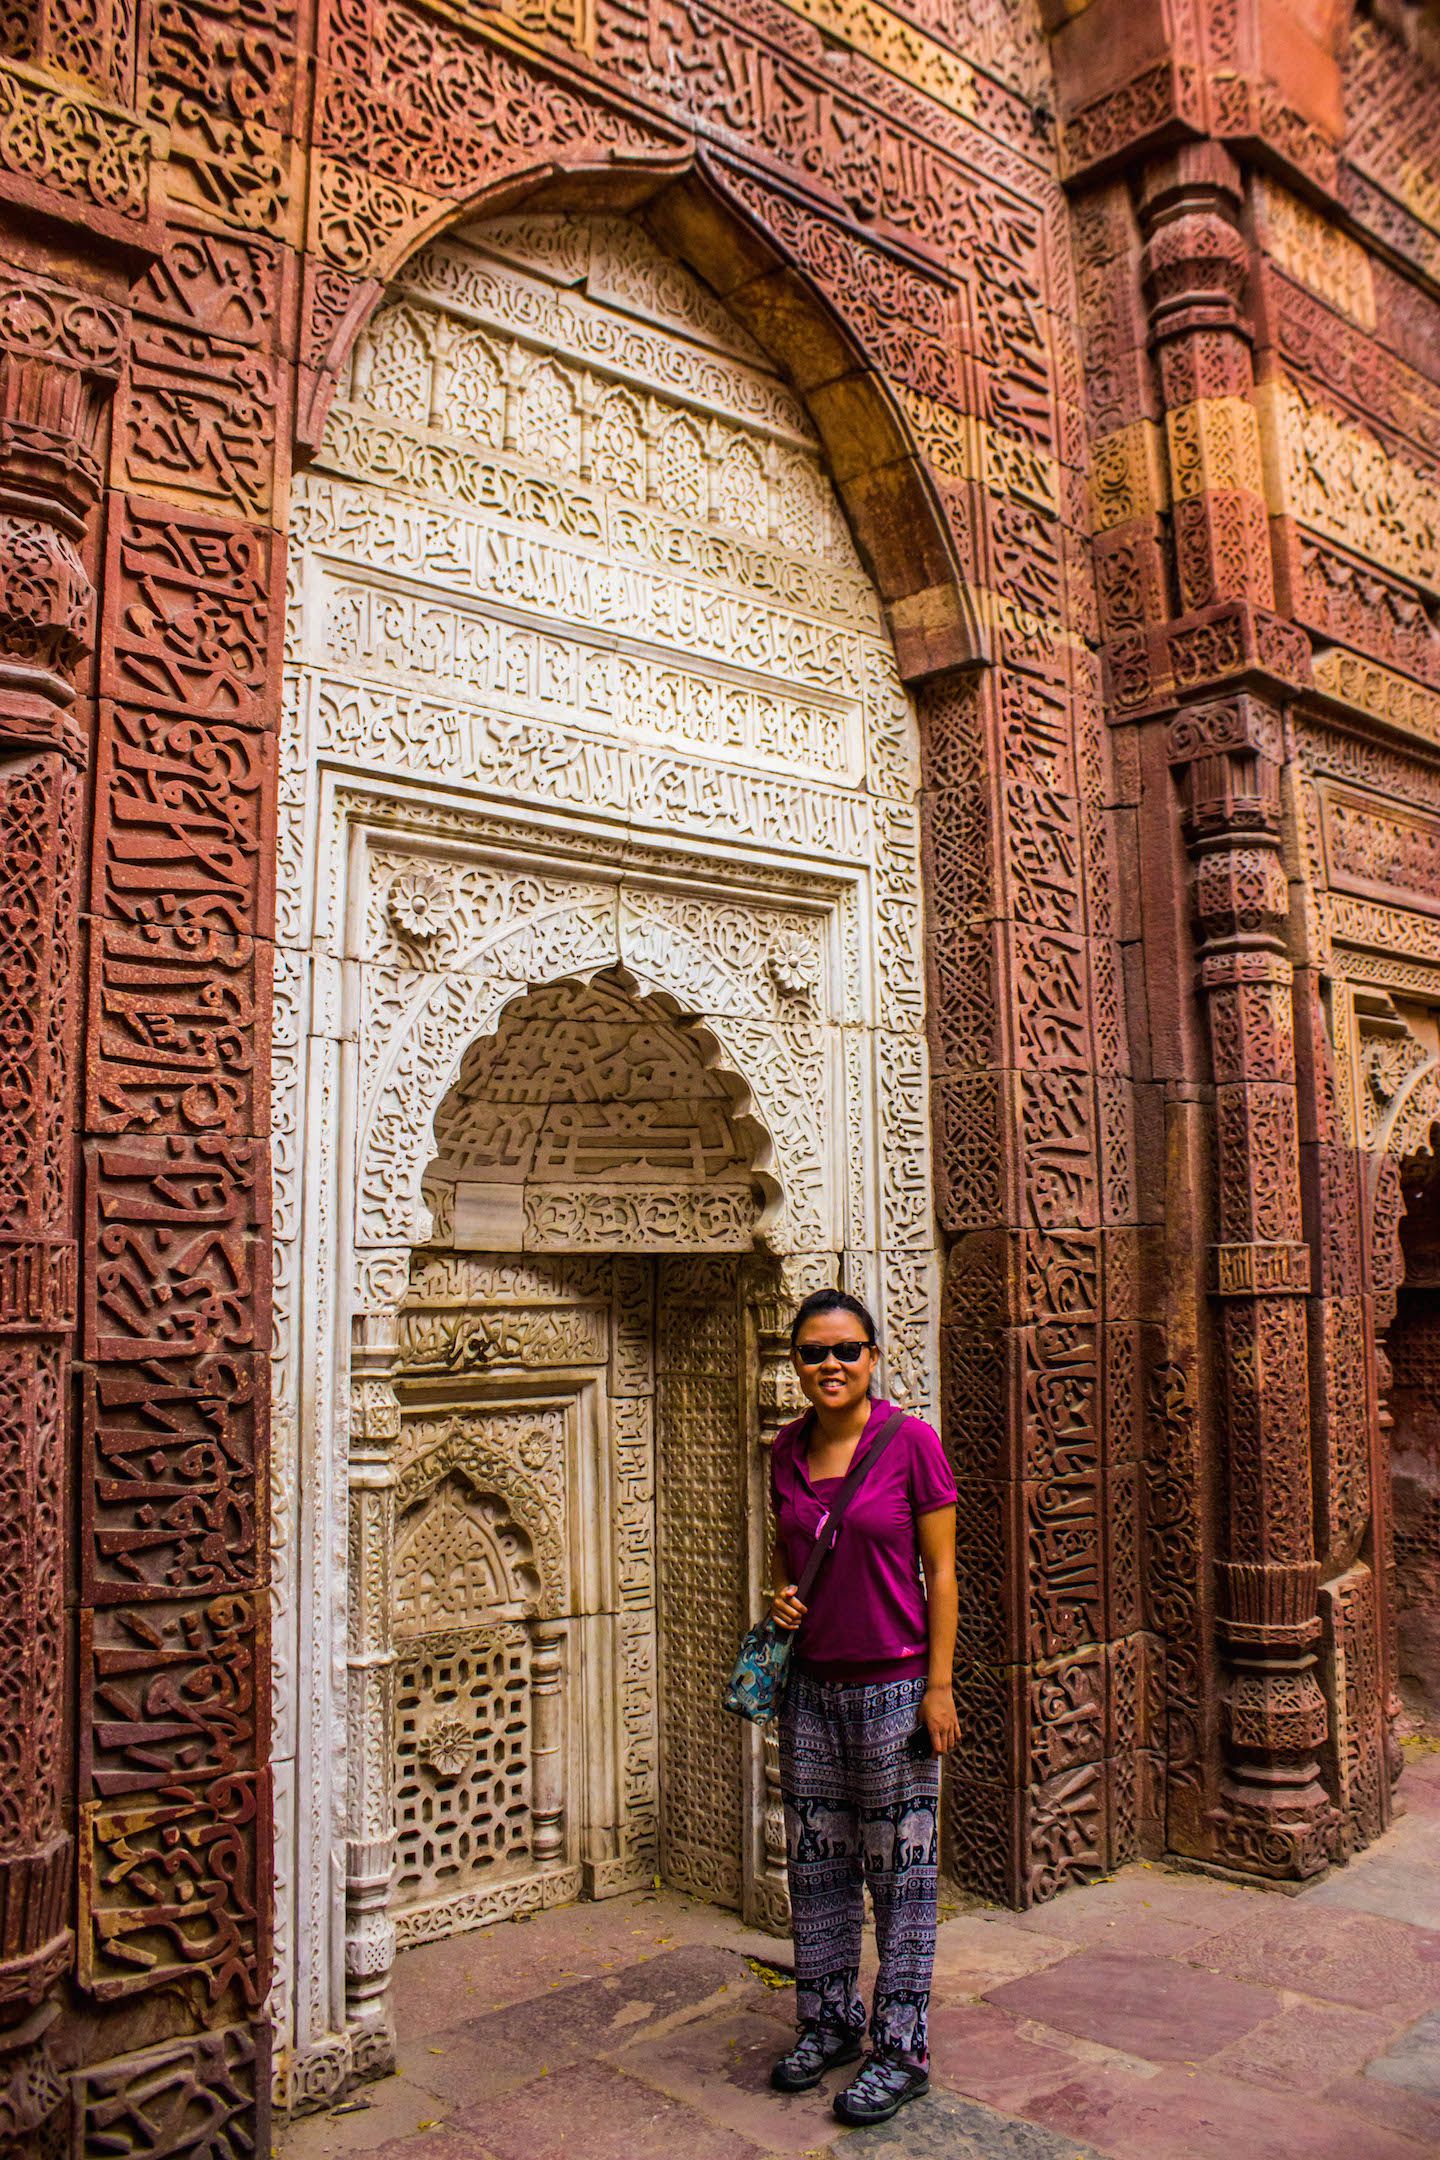 Julie and the wall carvings at Qutb Minar, New Delhi, India